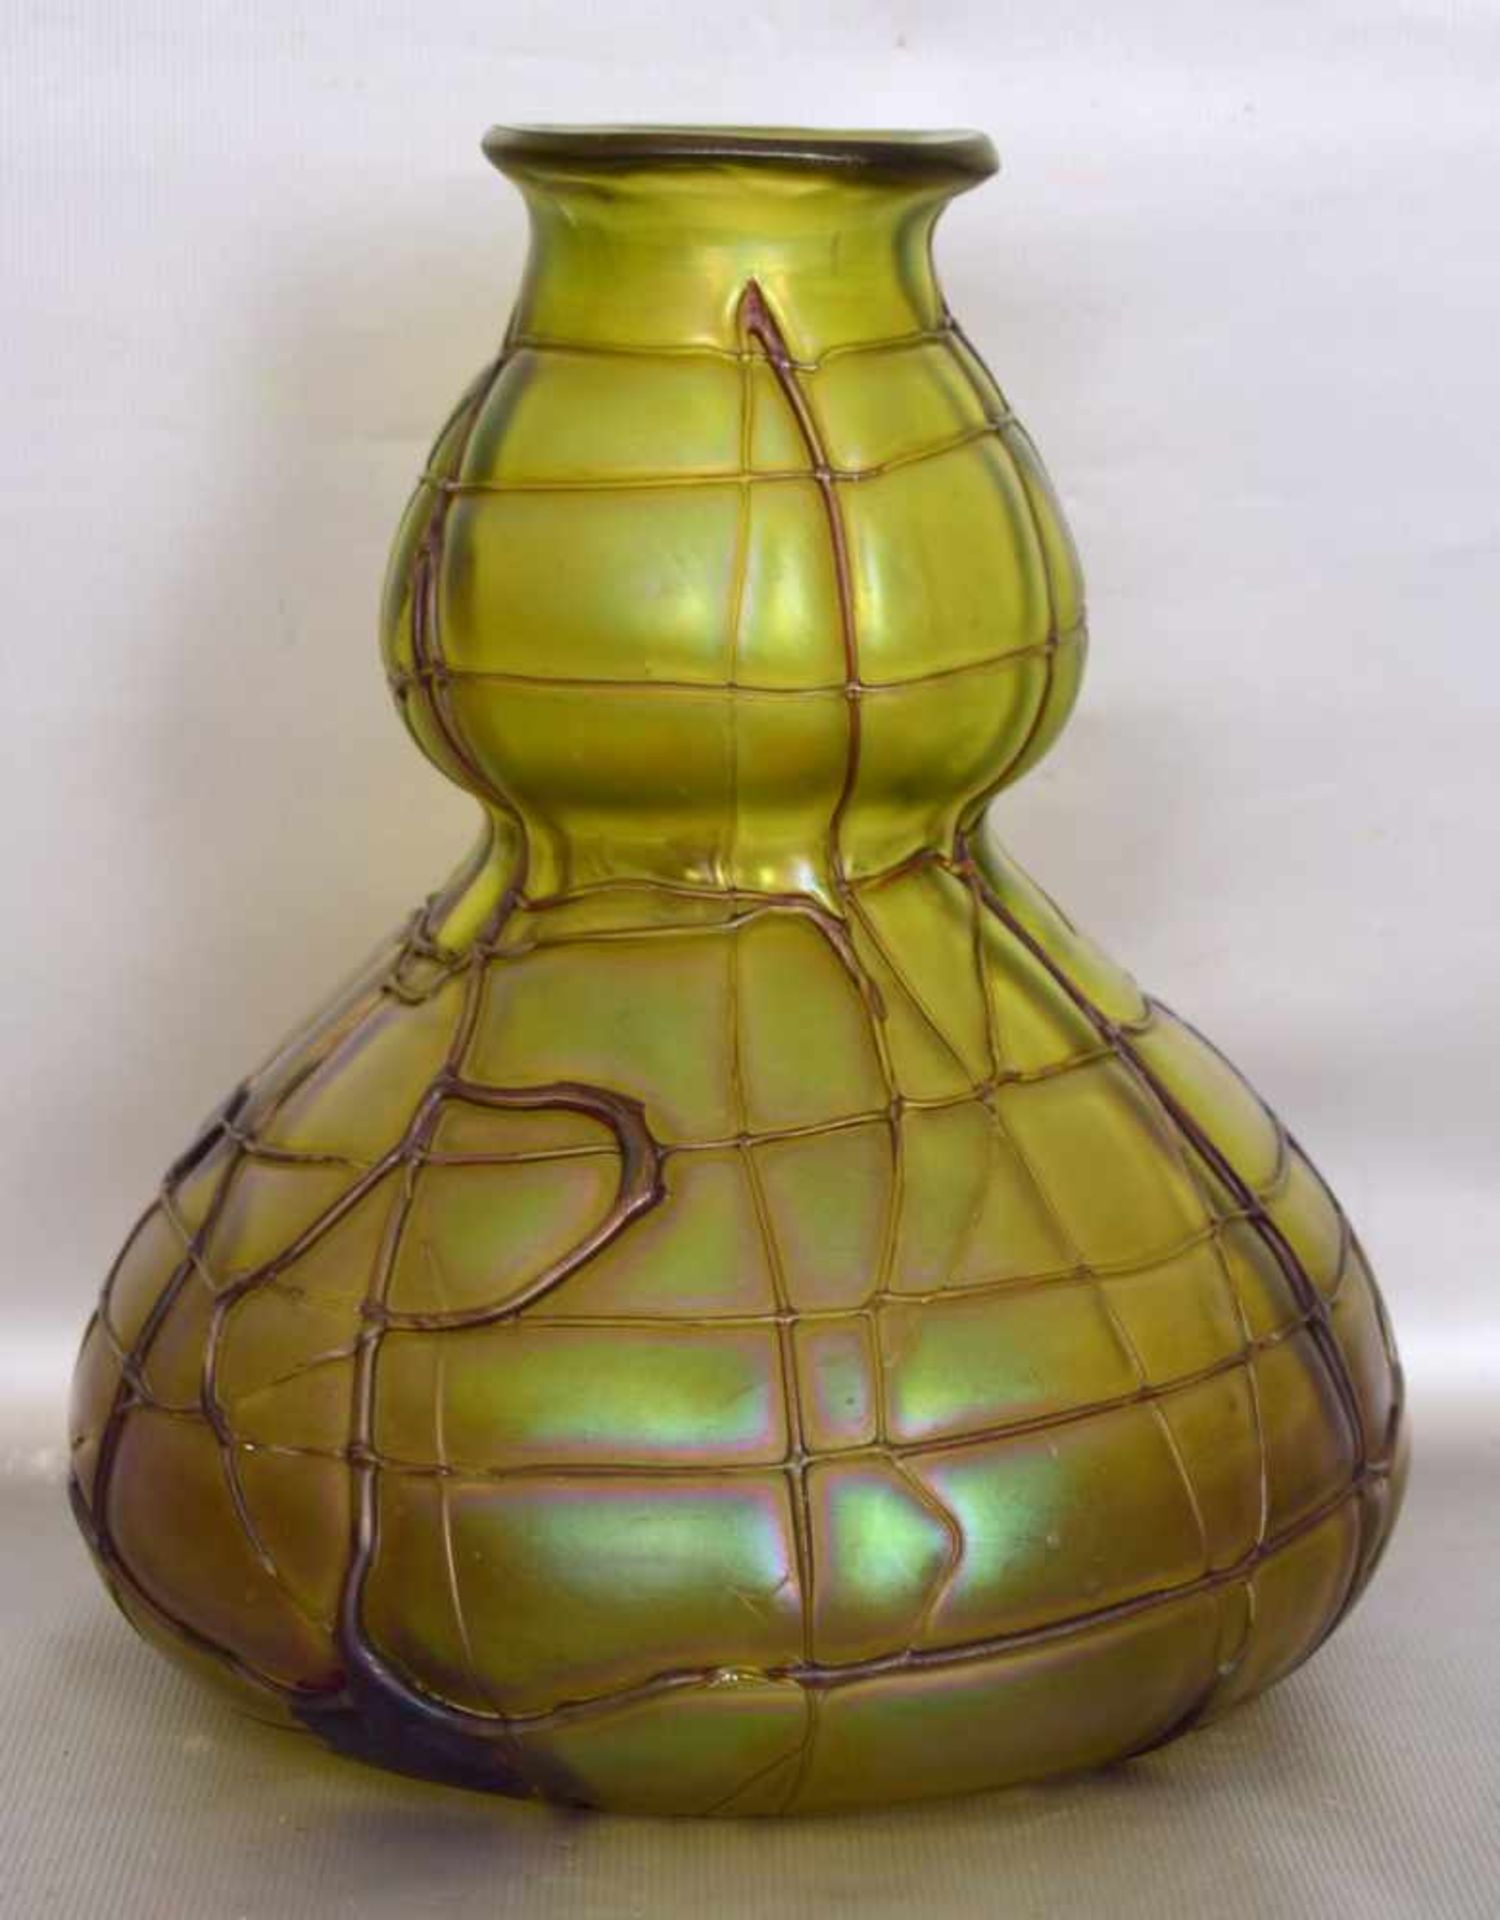 Jugendstil-Vasegrünes Glas, rund, gebaucht, mit Fadenauflage, H 20 cm, FM Palme König, 19. Jh.